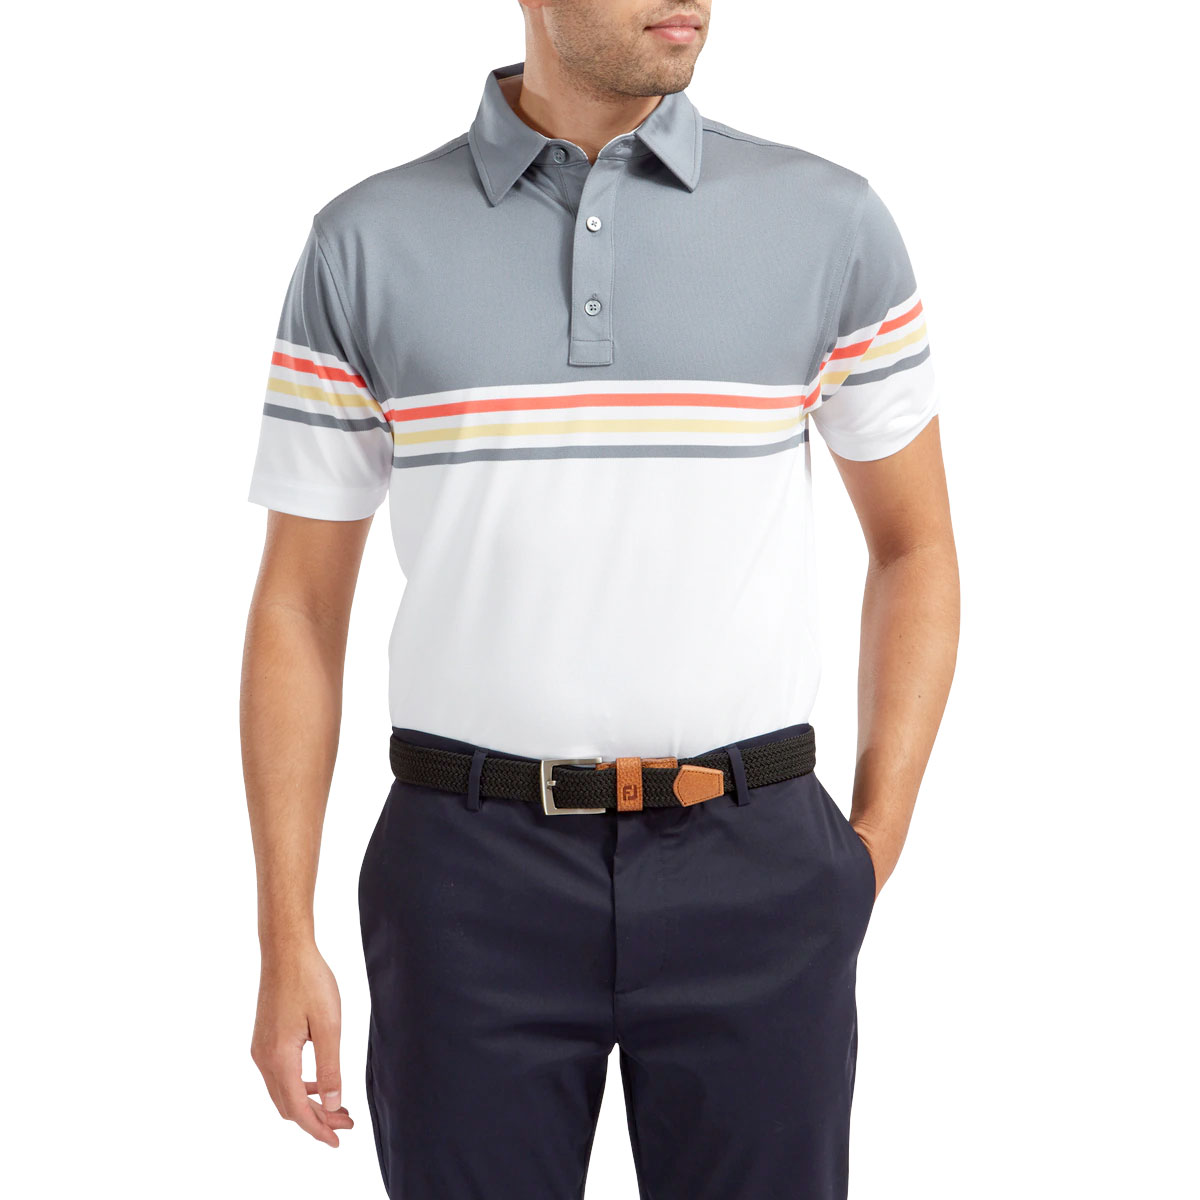 FootJoy Stretch Pique Colour Block Mens Golf Polo Shirt  - Slate/White